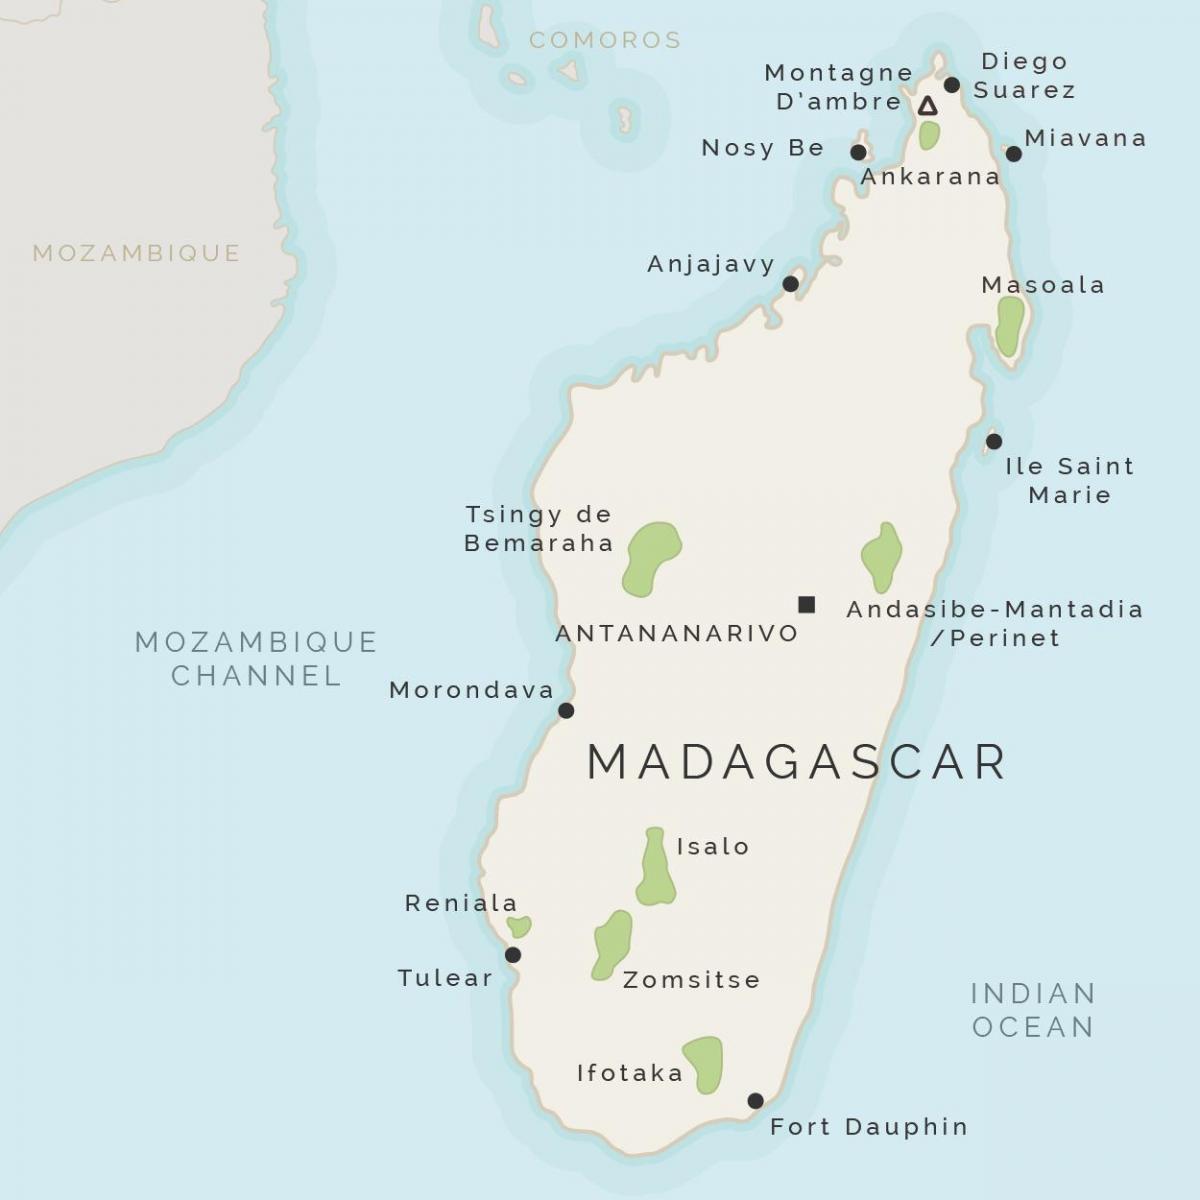 Madagaskar haritası ve adaları çevreleyen 